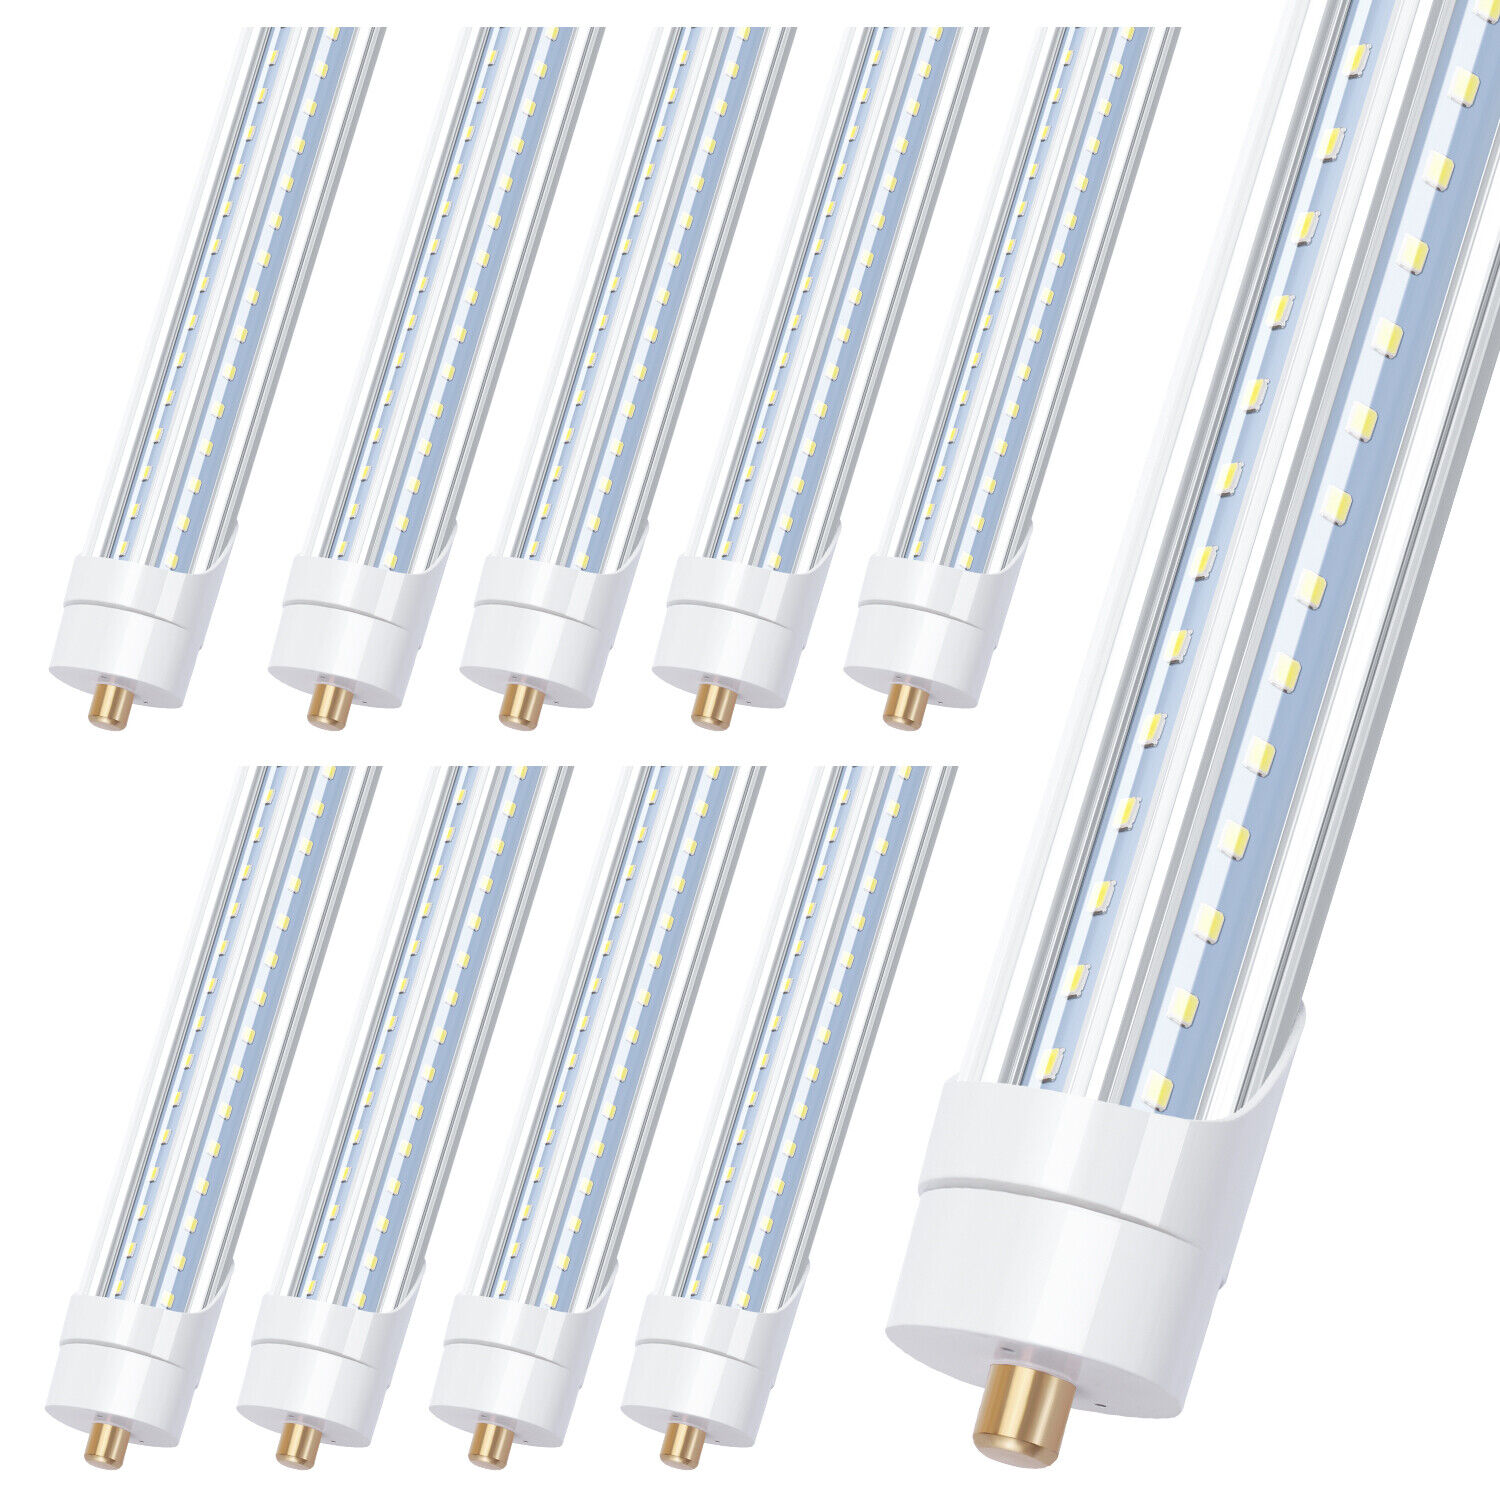 90W T8 LED 8FT Single Pin LED Light Tube 8Foot 6000K LED Shop Light Bulbs 10Pack Unbranded Does Not Apply